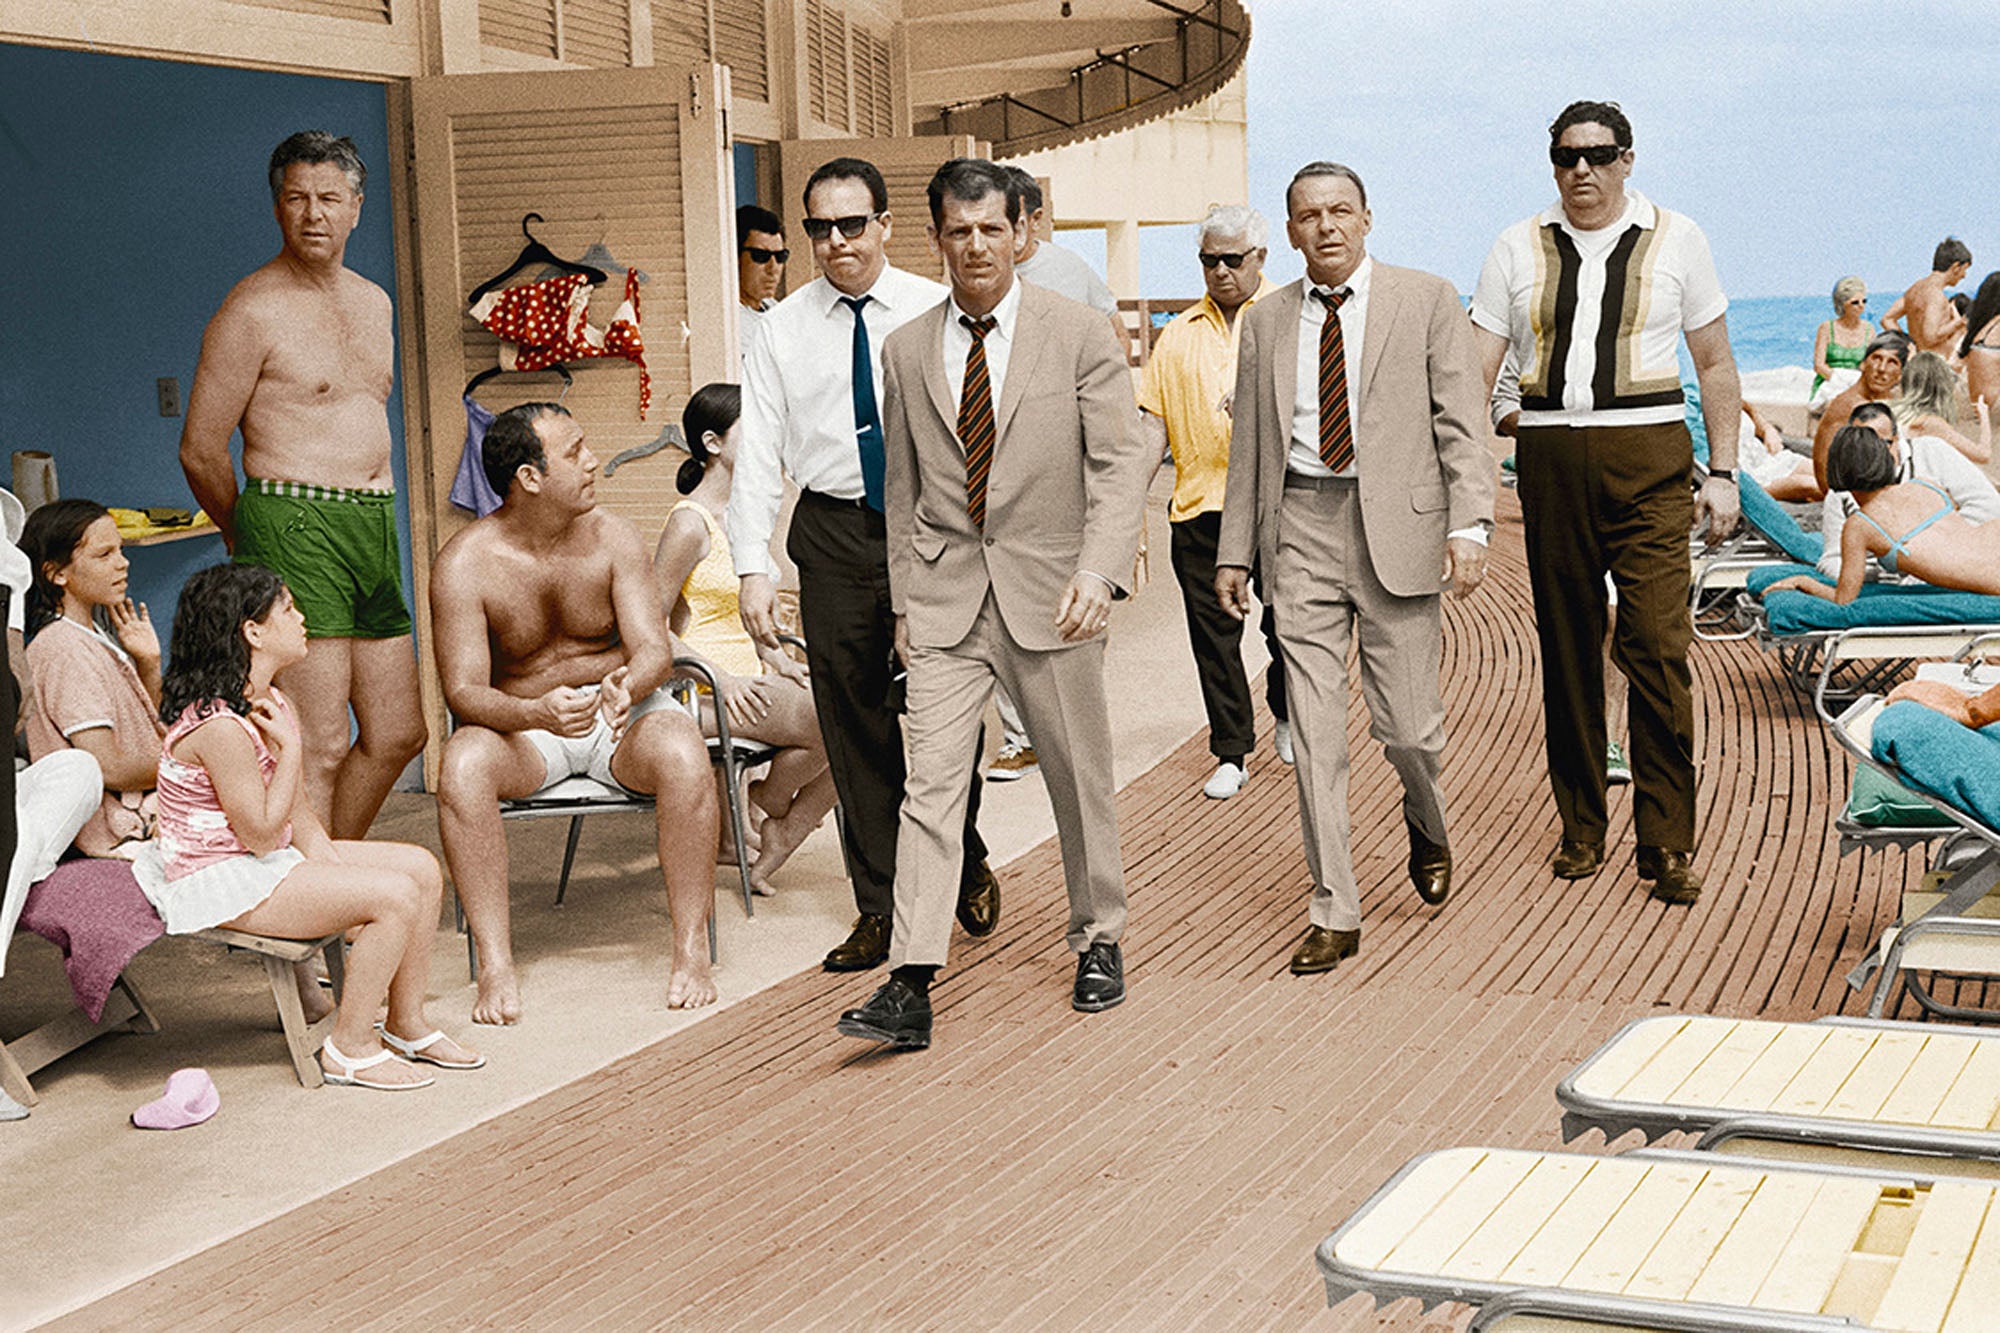 Frank Sinatra, Miami Boardwalk, 1986. (colourised edition)